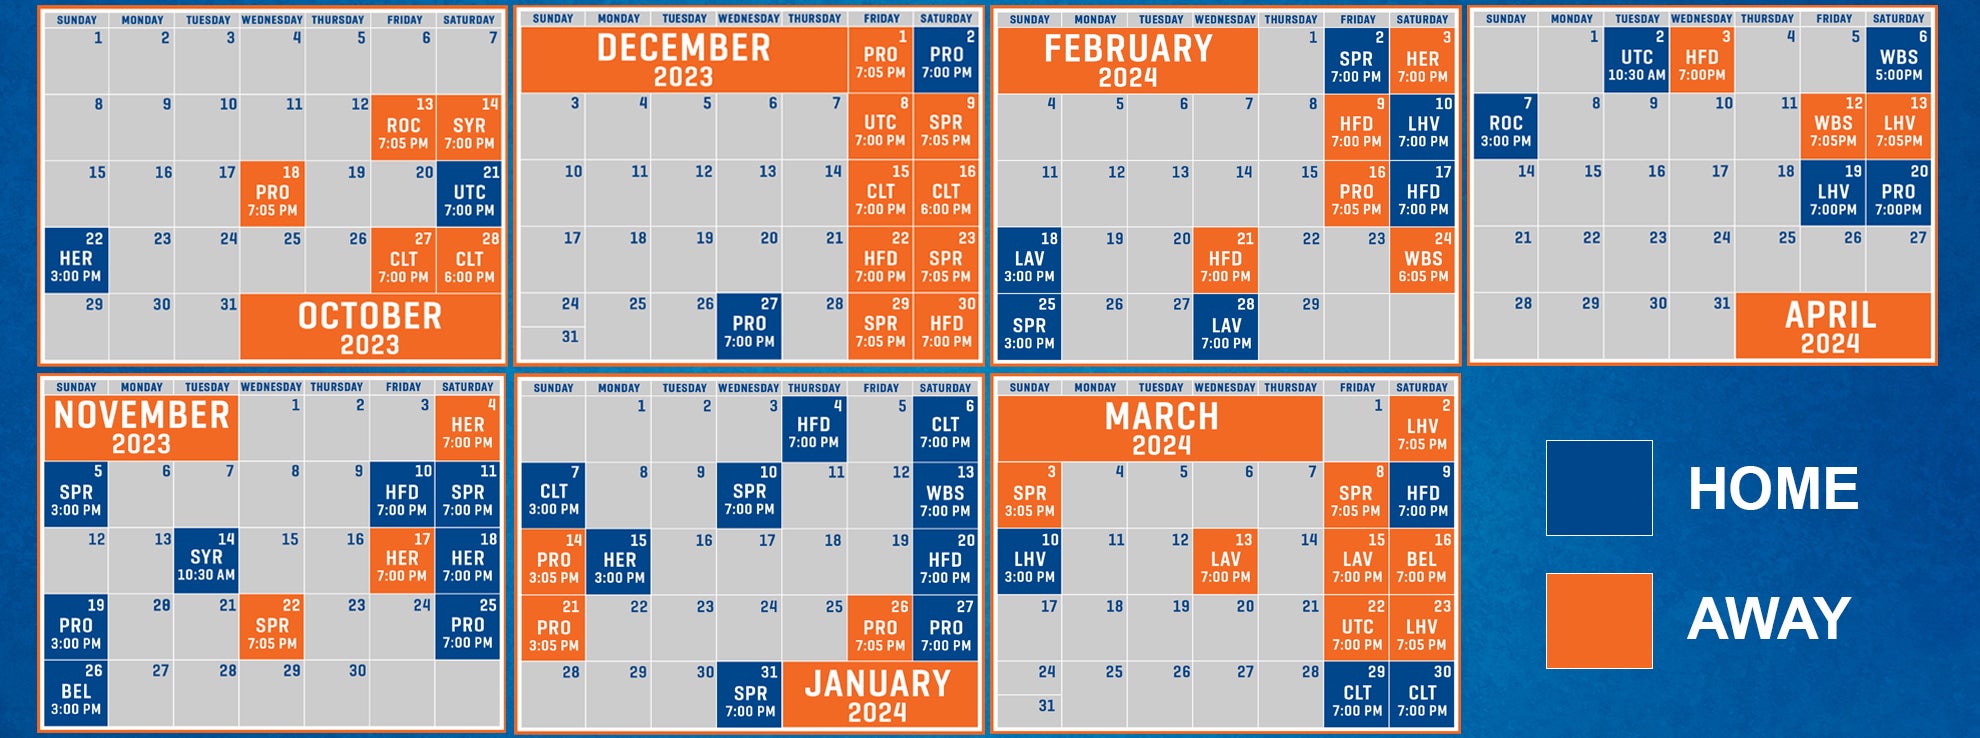 Here's Bridgeport Islanders' 2023-24 AHL promotional schedule